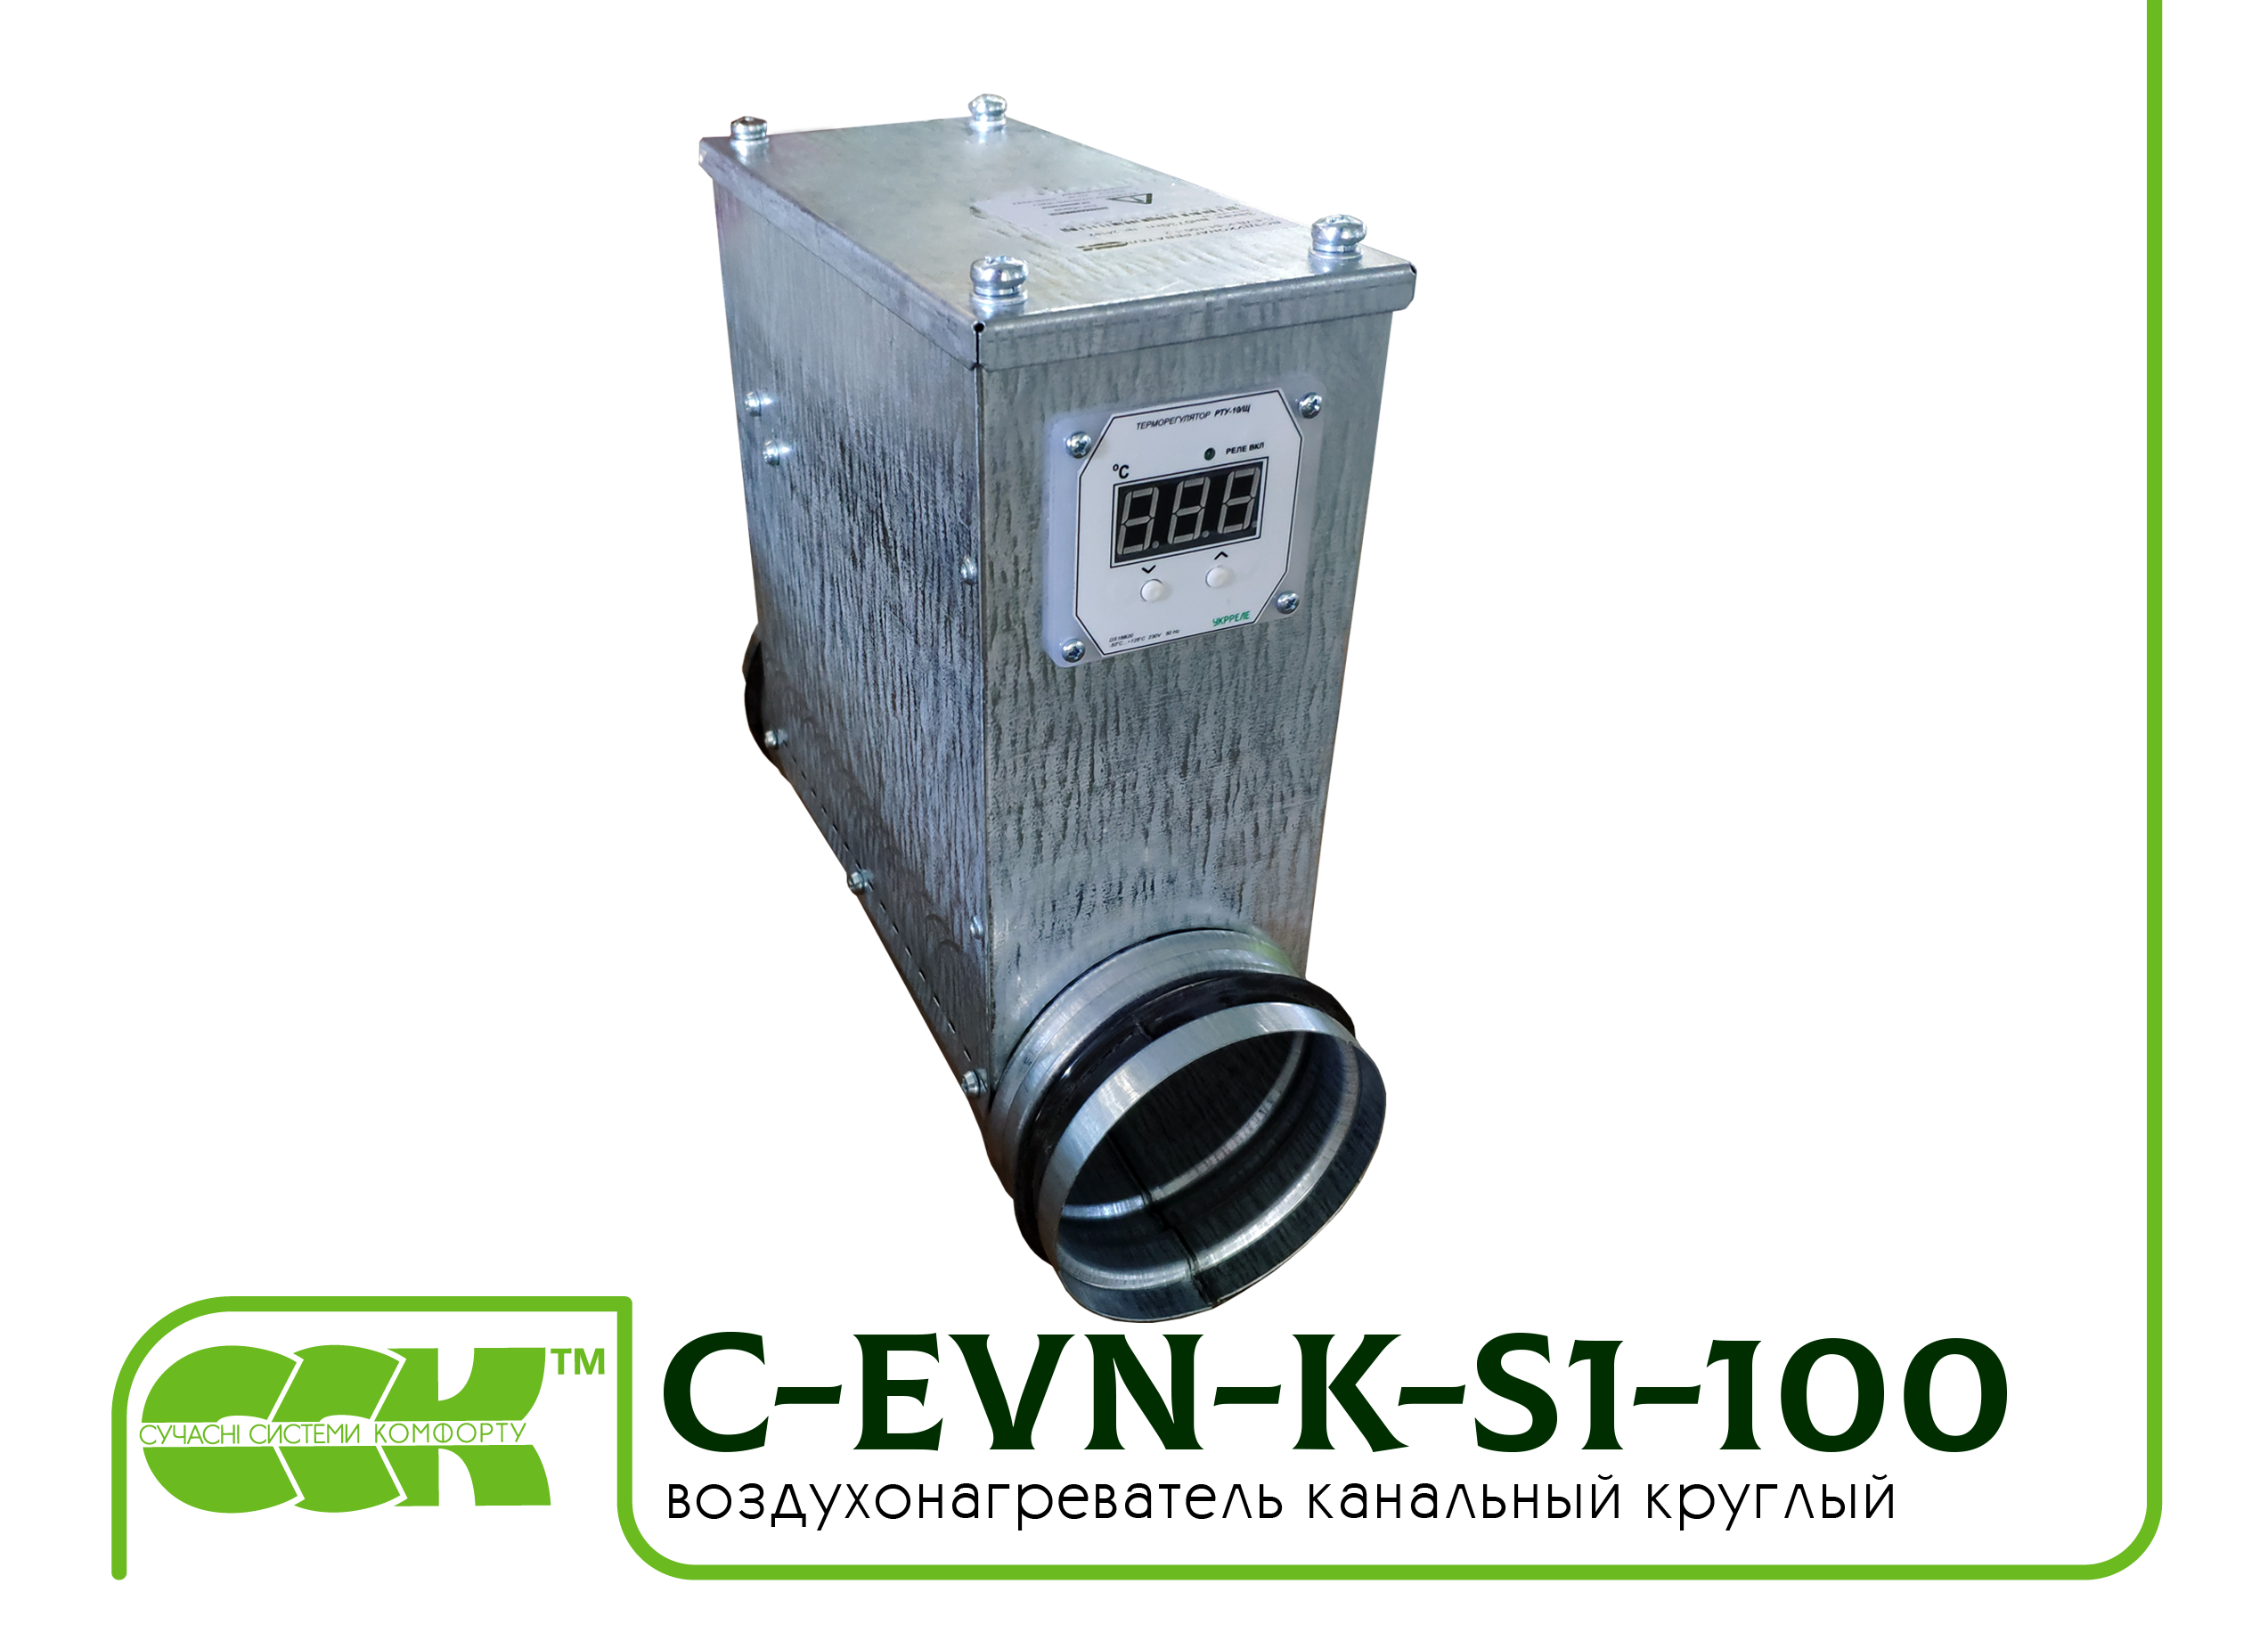 Воздухонагреватель канальный электрический для круглых каналов C-EVN-K-S1-100-0,6